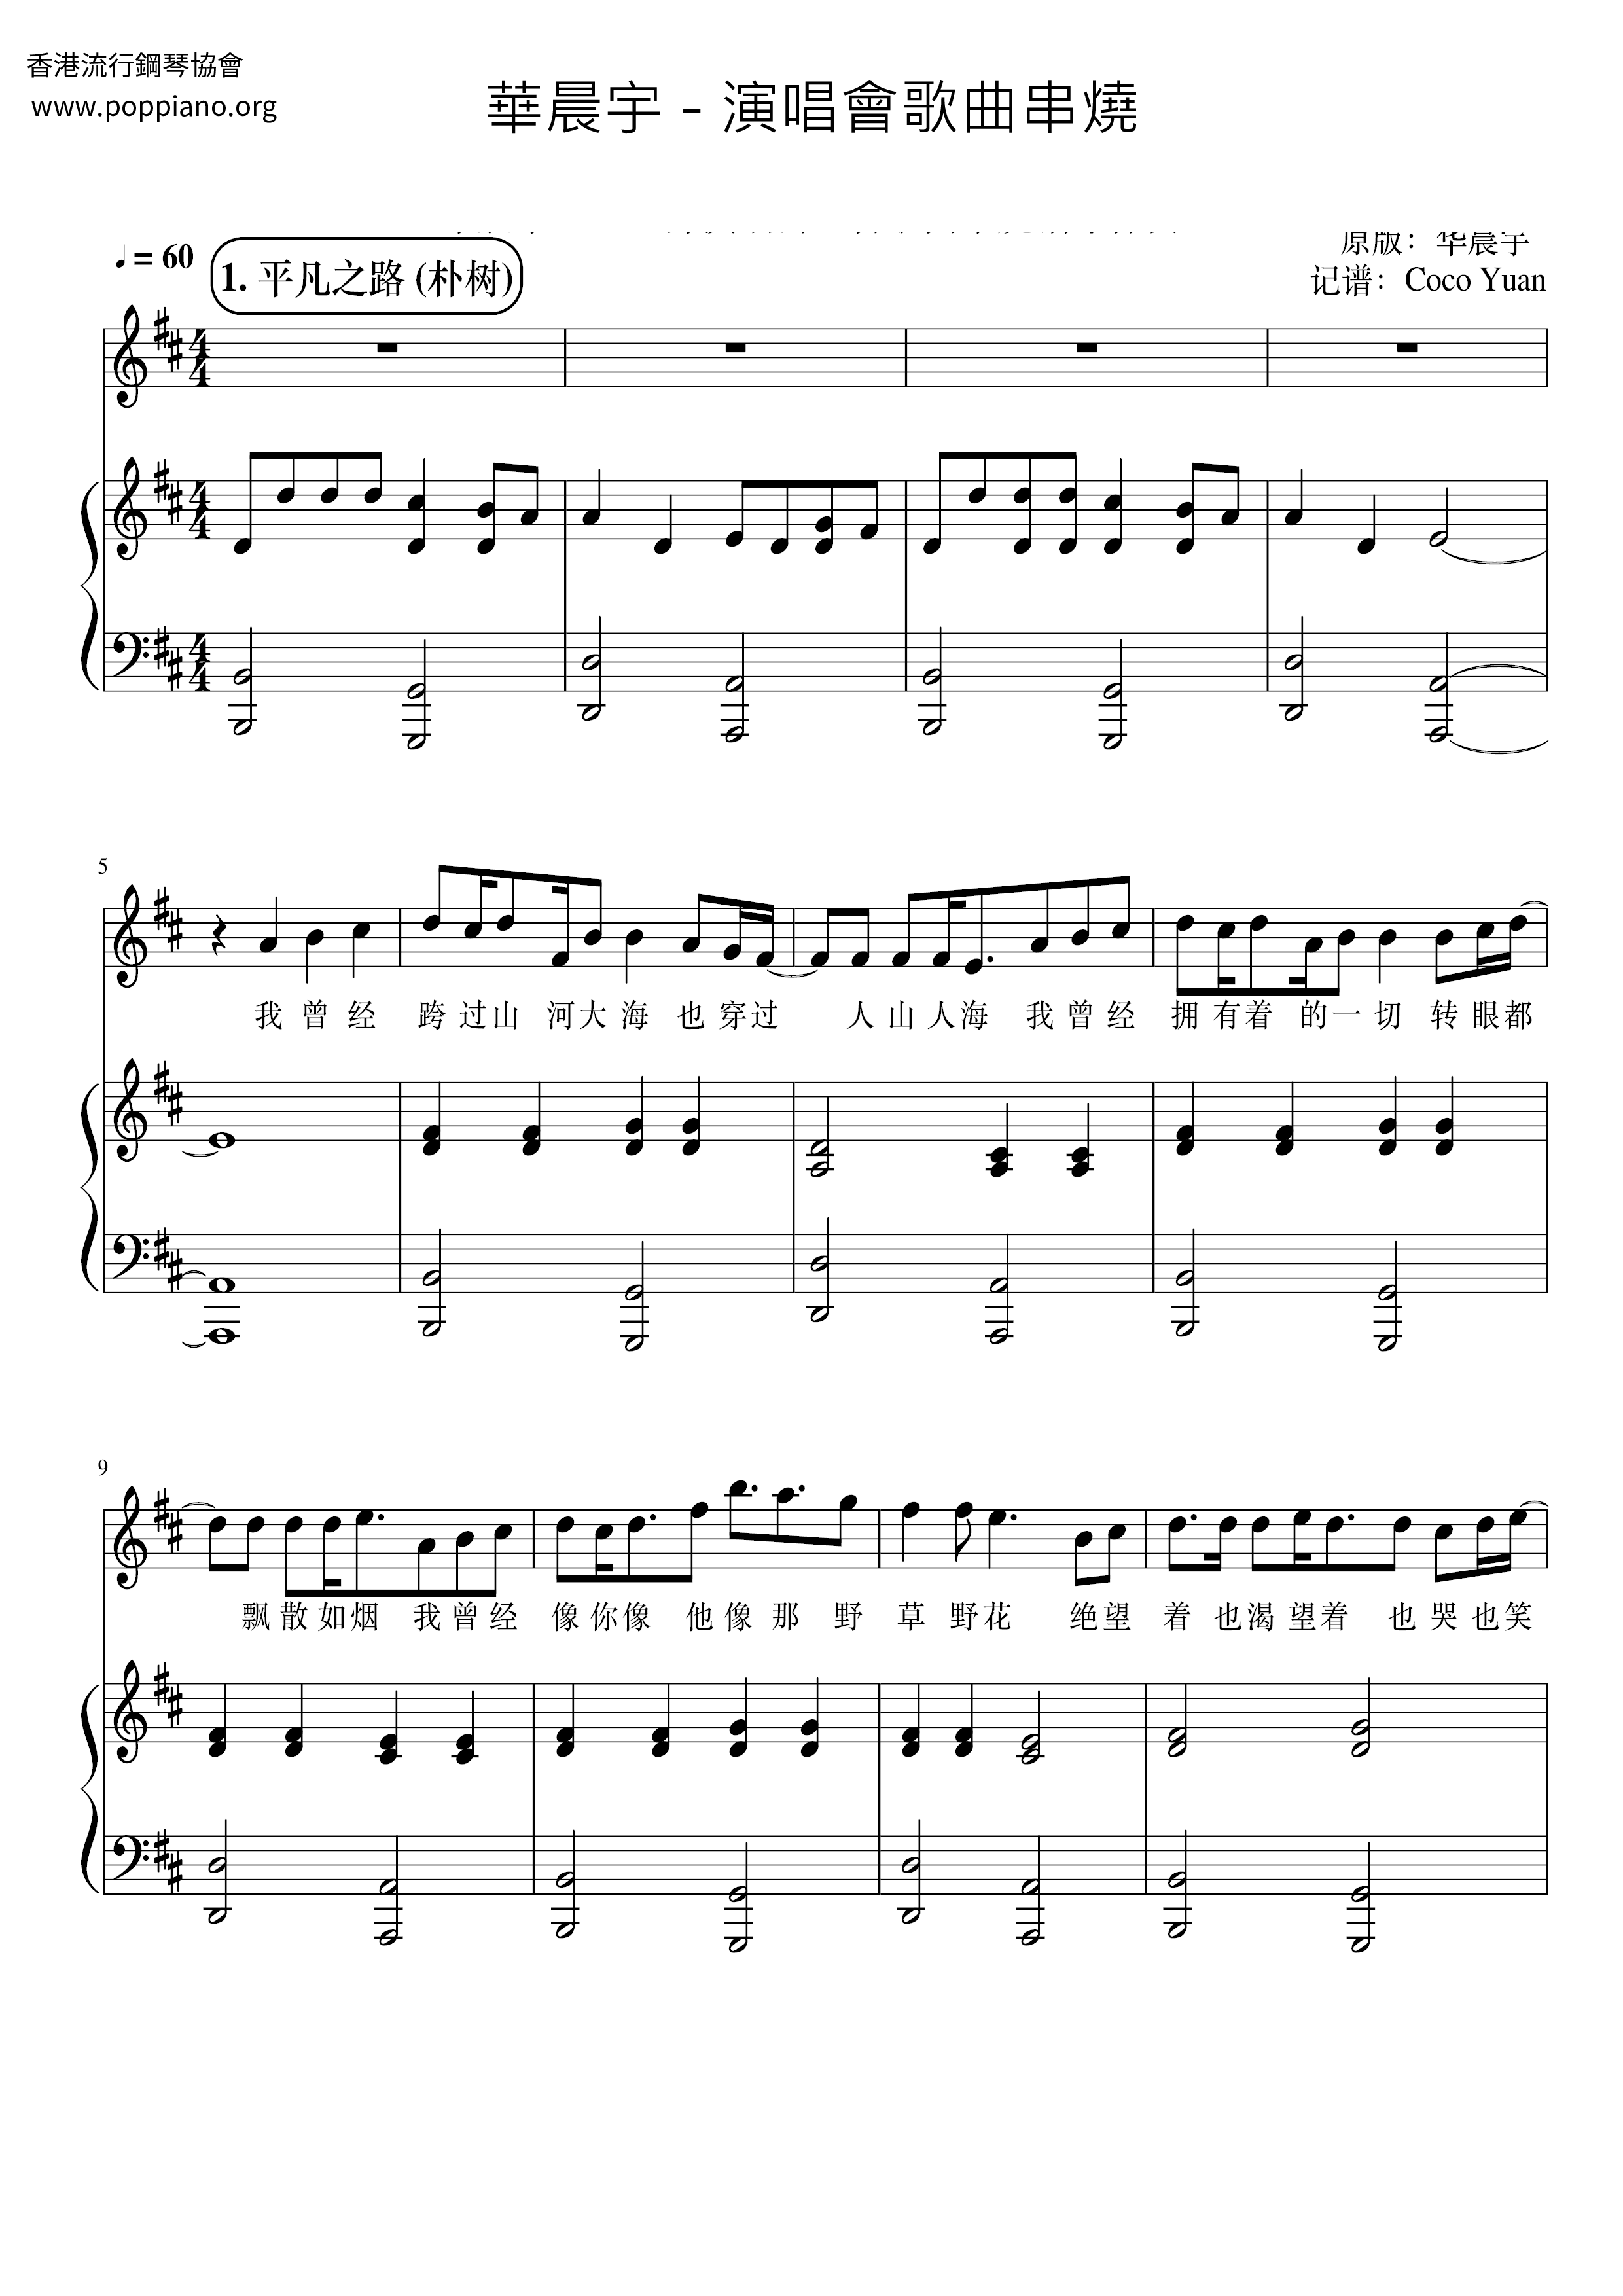 Concert Song Skewers Score